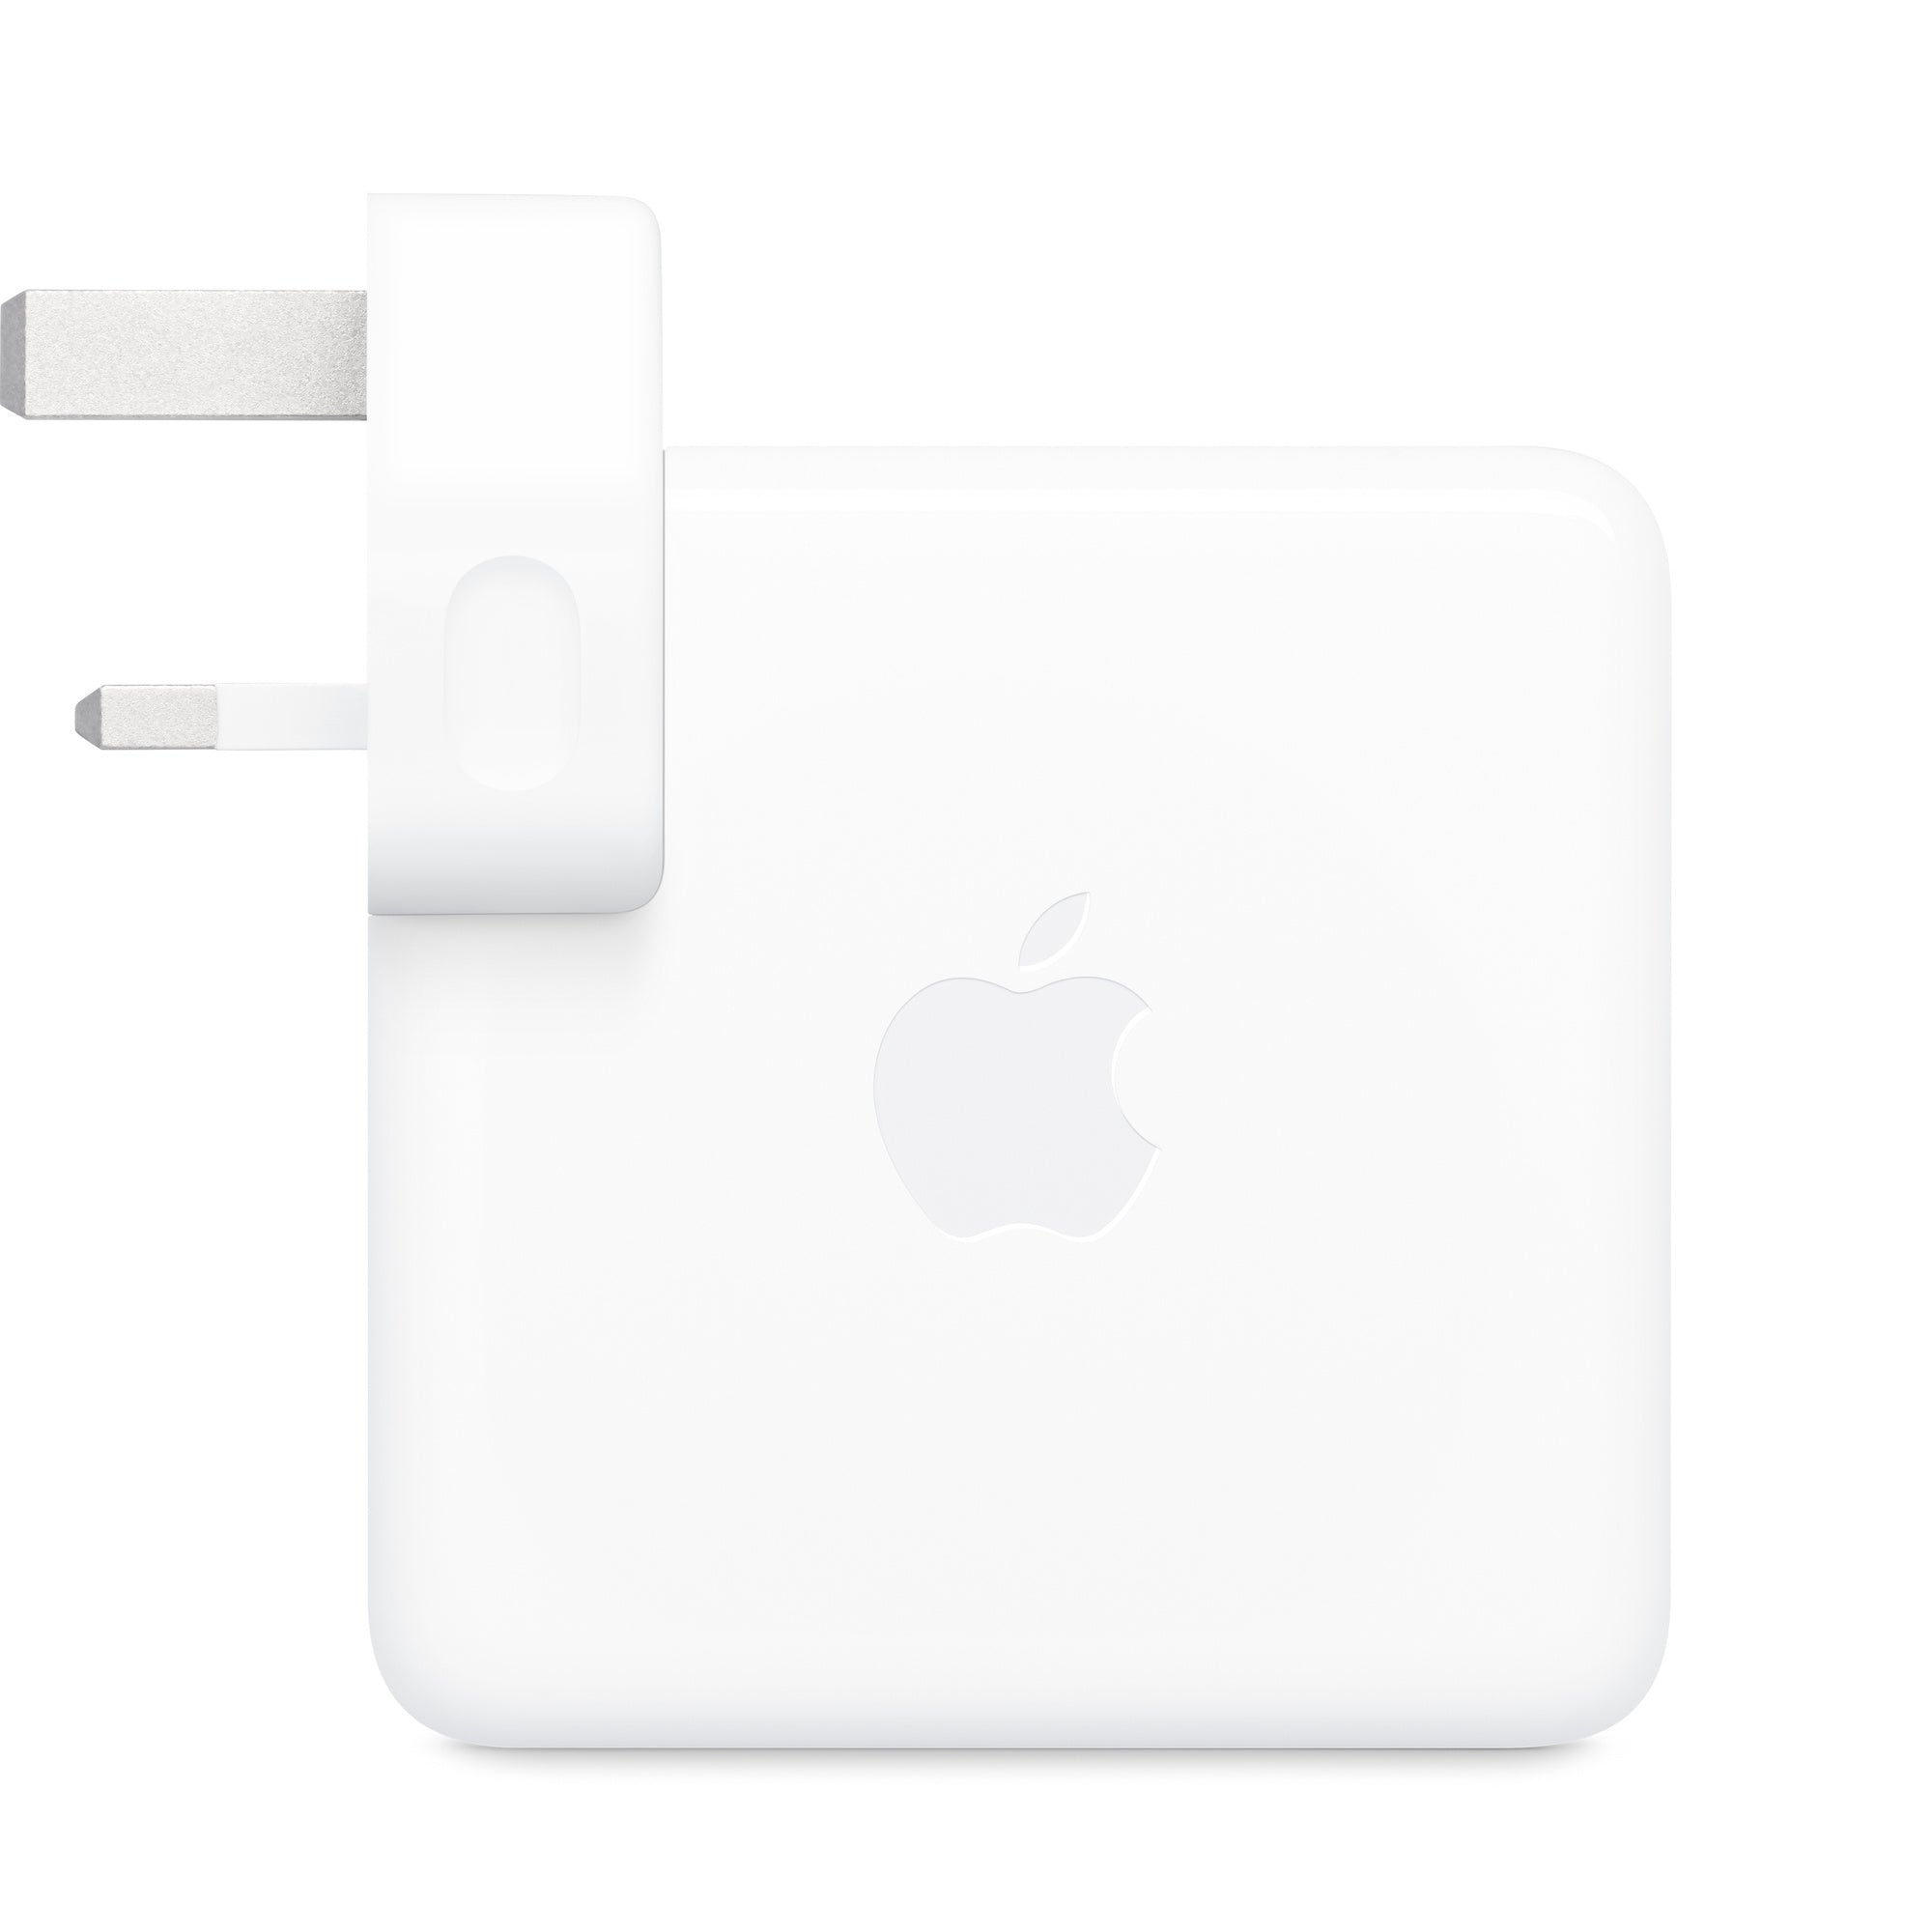 https://tqstorekw.com/search?q=Apple+96W+USB-C+Power+Adapter&options%5Bprefix%5D=last